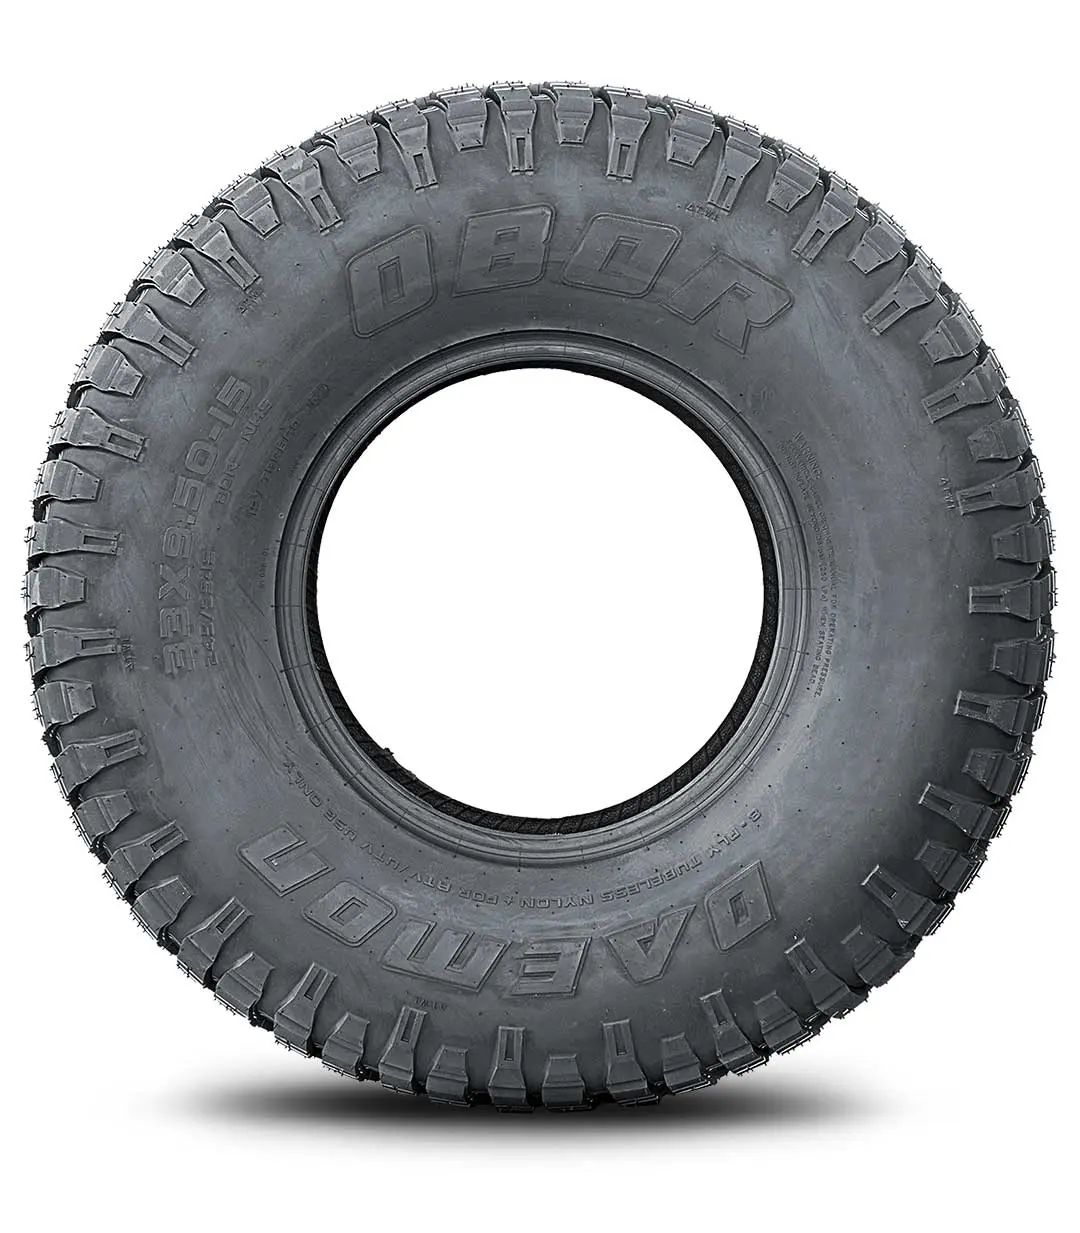 Daemon UTV tires, Lightweight Big & bulky UTV Tires - OBOR Tires